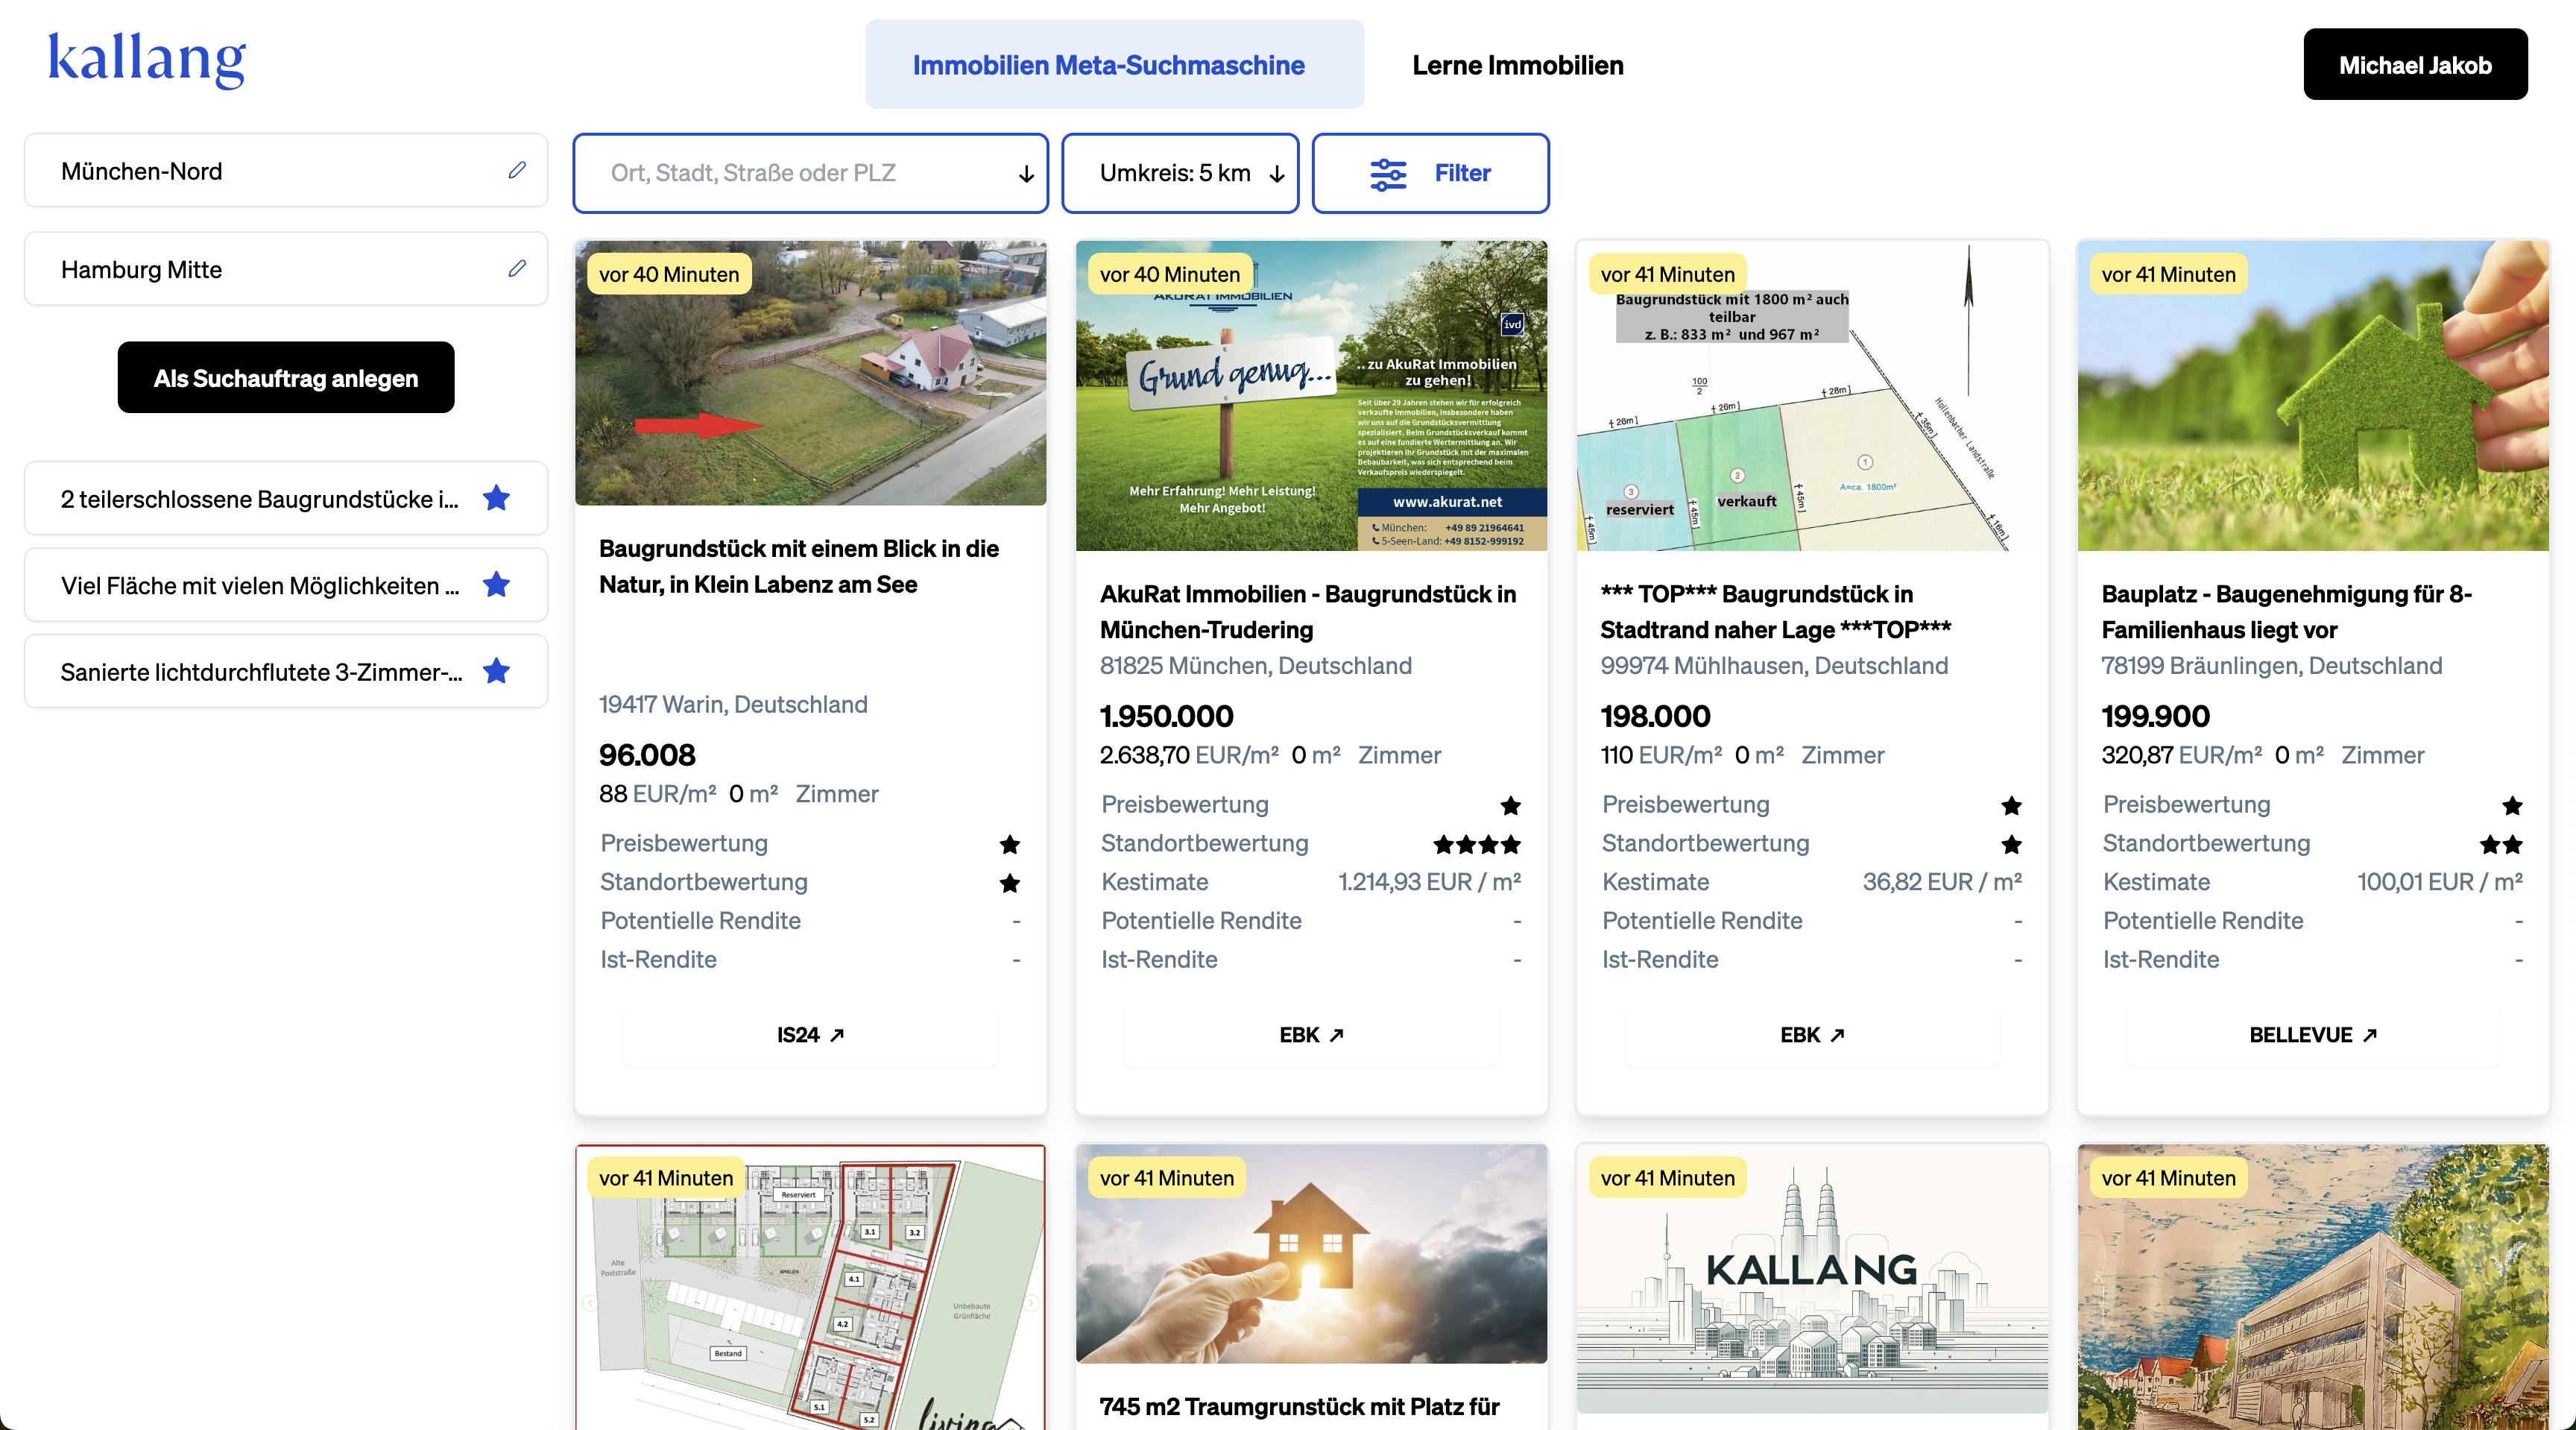 Kallang durchsucht zahlreiche Immobilienportale Deutschlands. Investoren können dann mit professionellen Screening-Tools die besten Objekte finden.